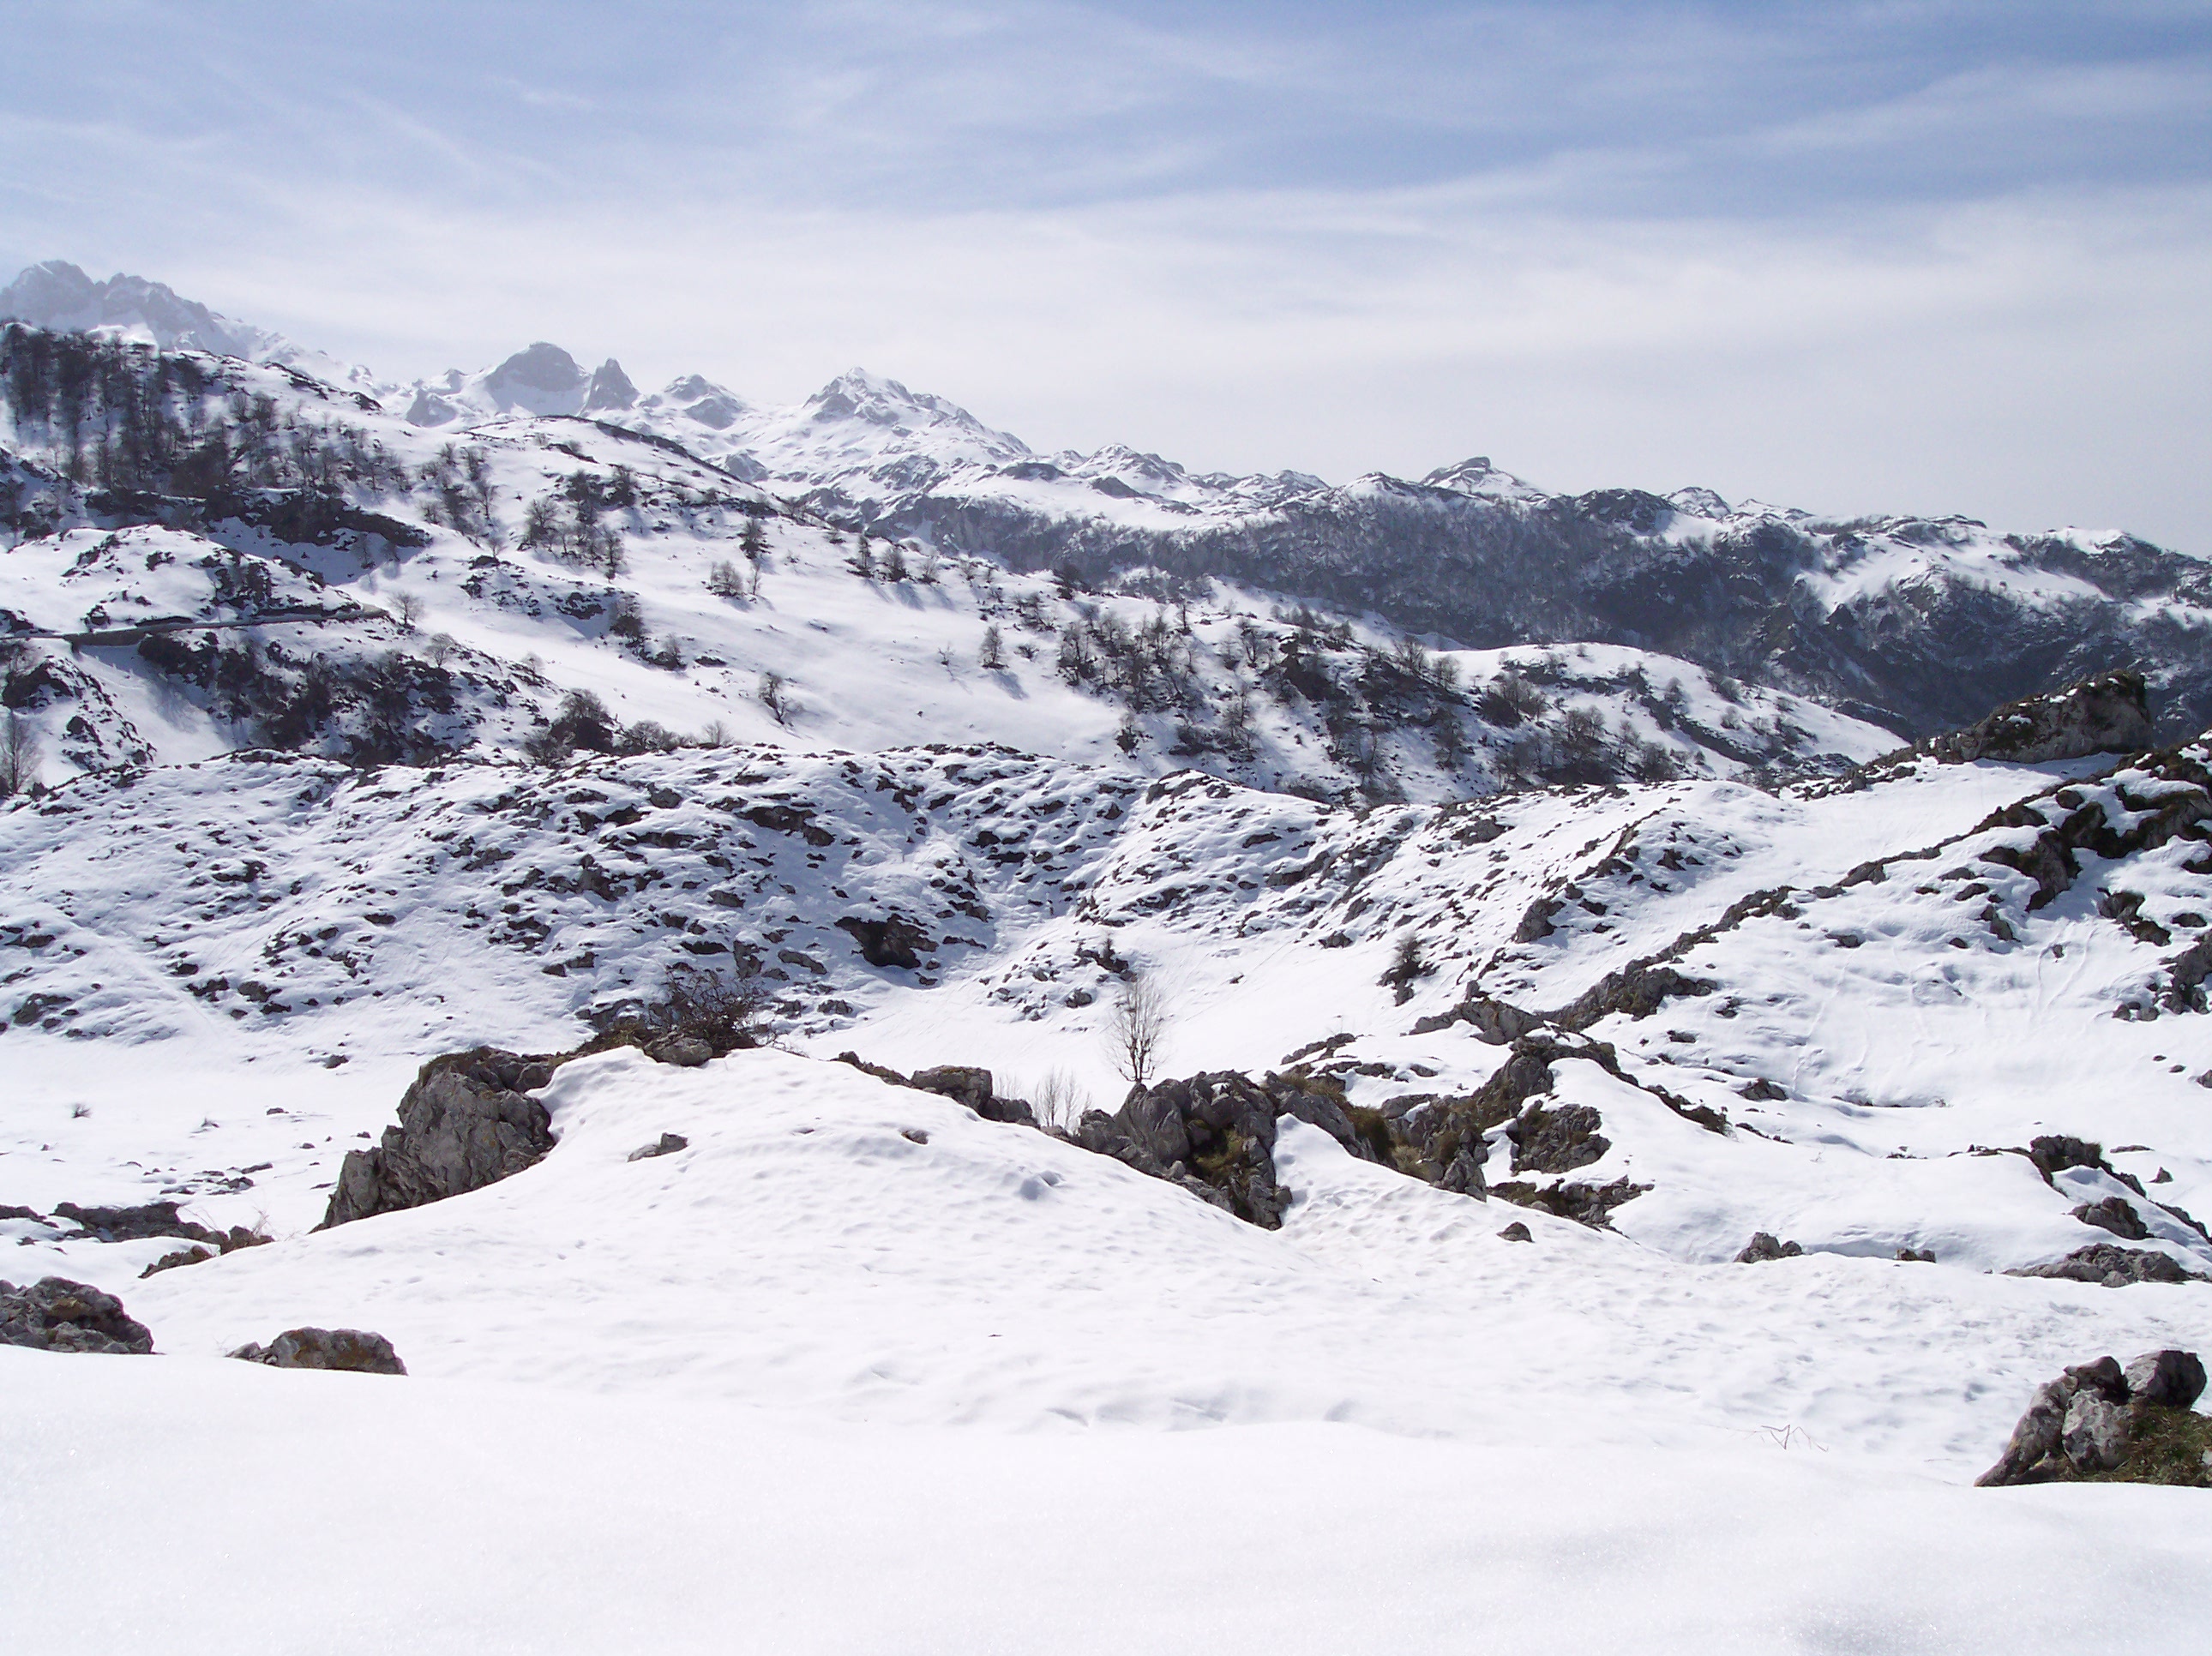 16 Imagen invernal del acceso a los Lagos de Covadonga. Cangas de Onís (Asturias). Foto R. Suárez